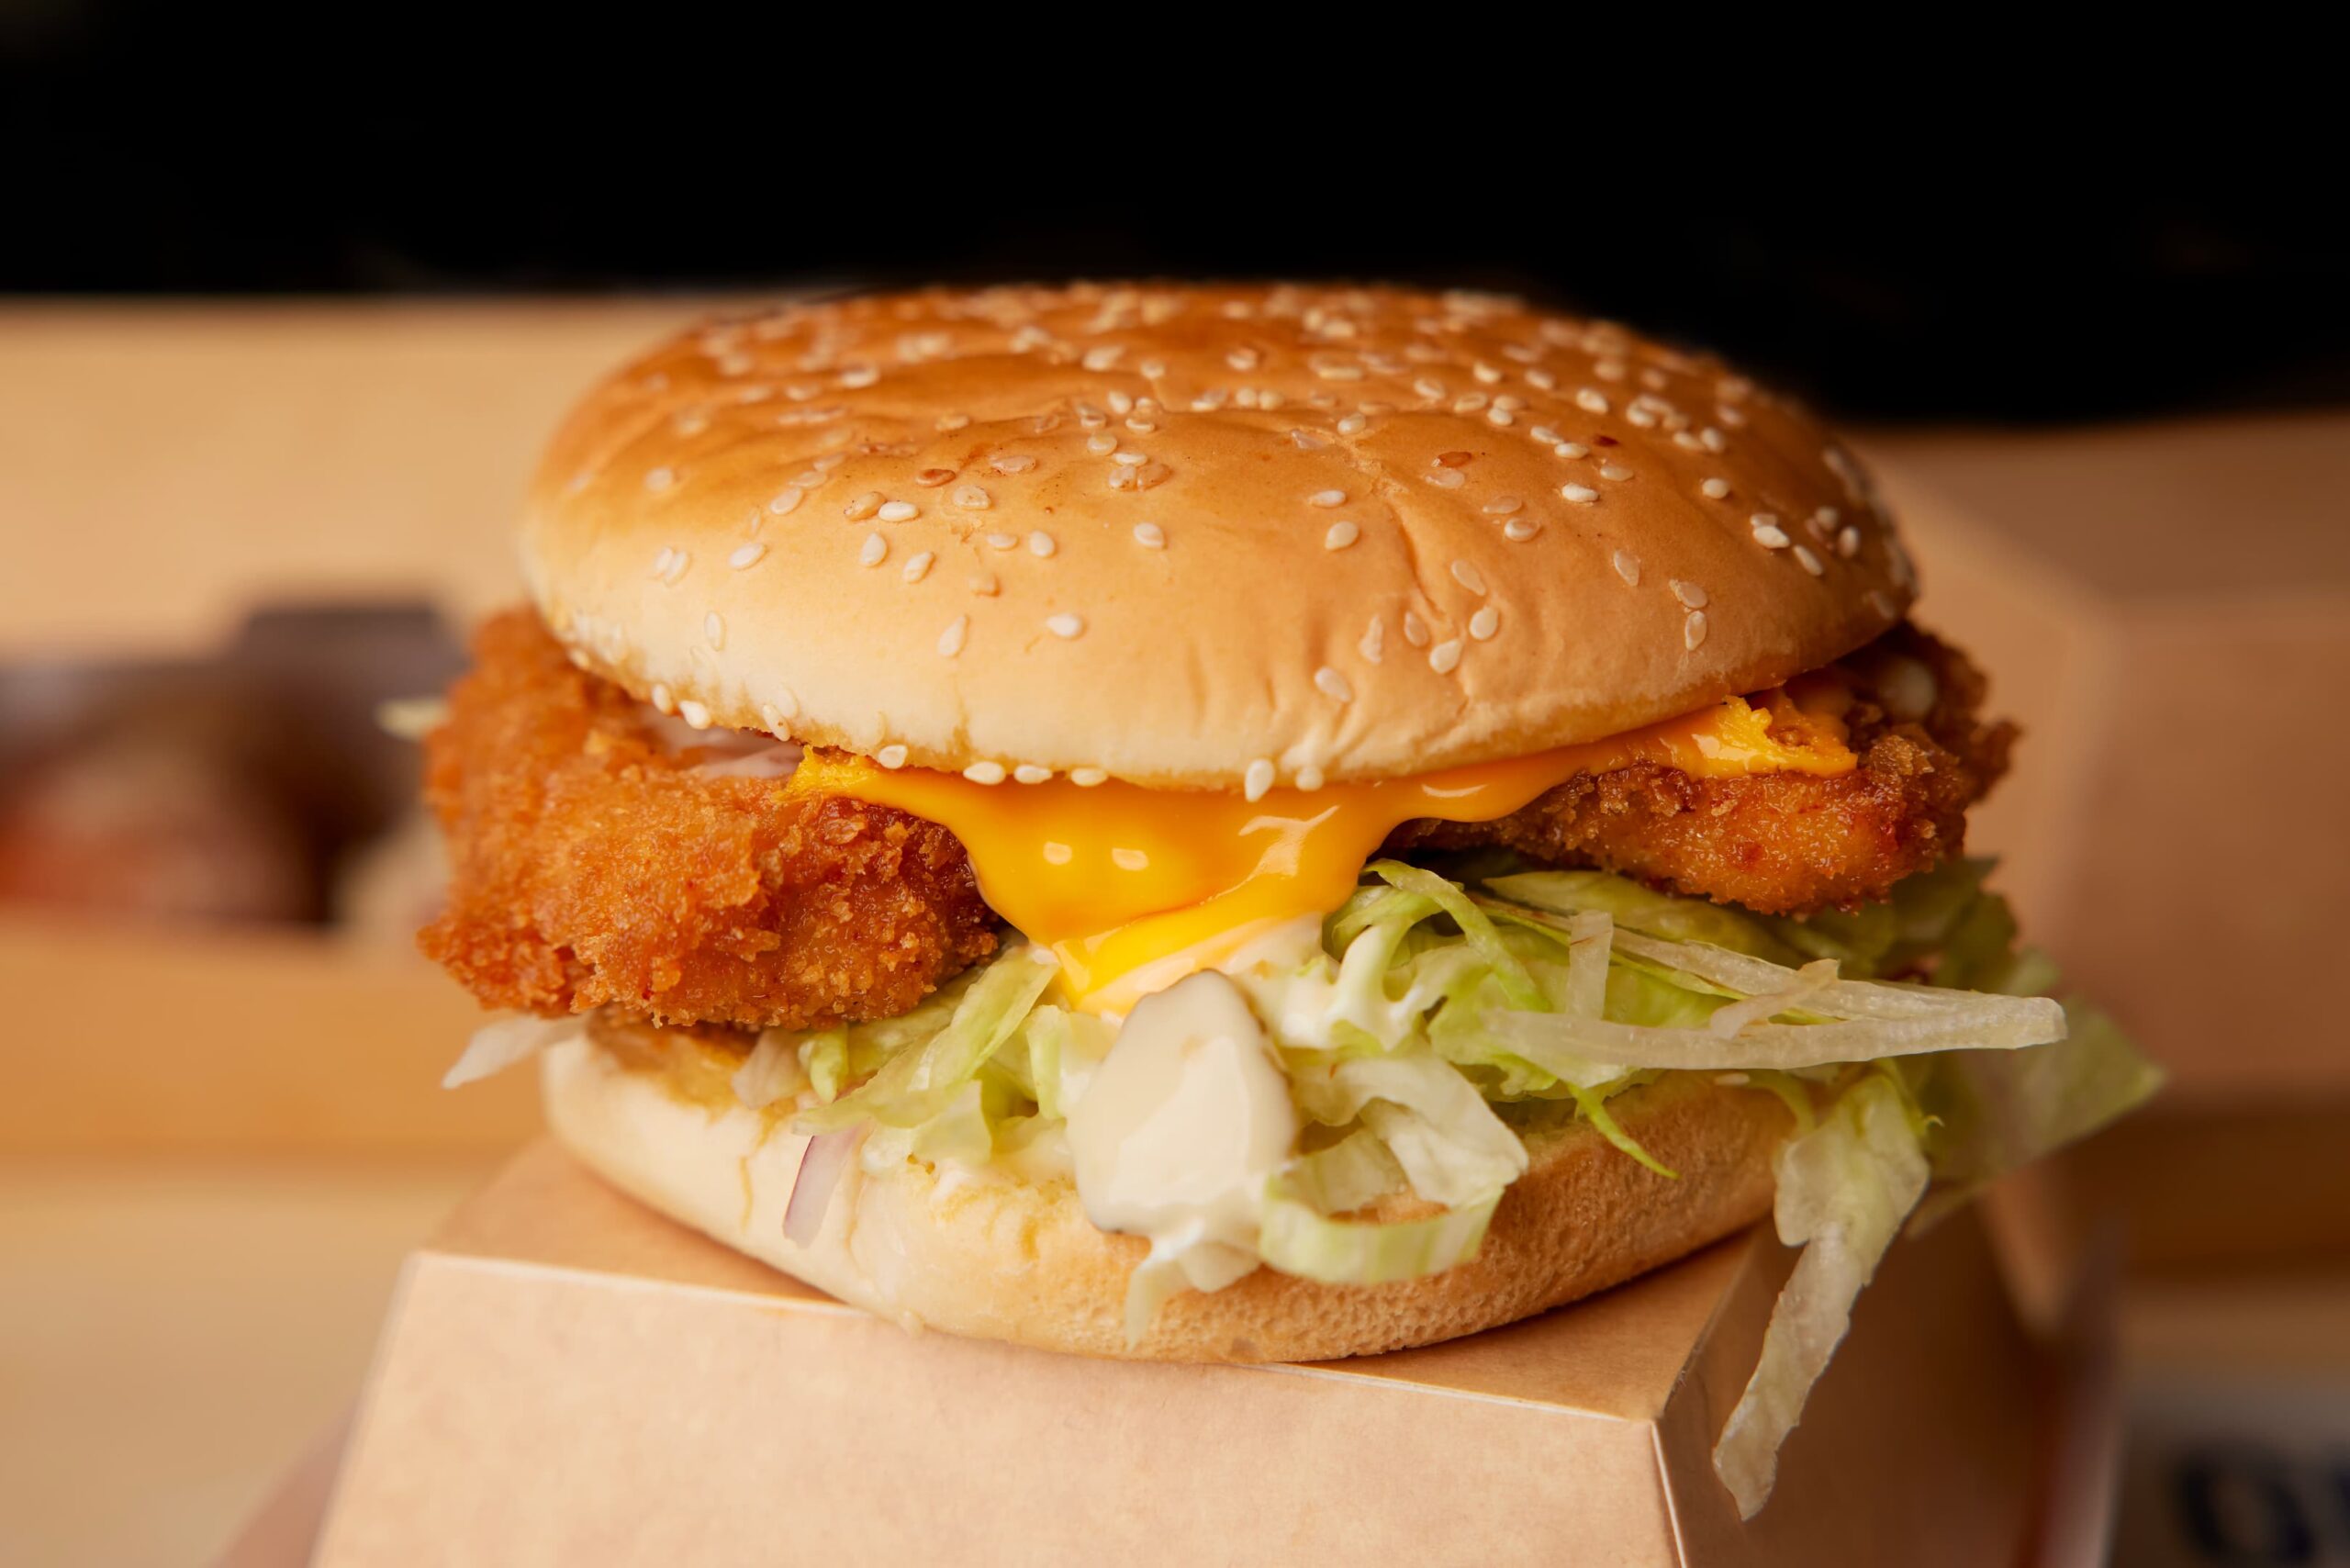 Korean Chicken 2021.06.25 103A8122 scaled - Chicken Burger